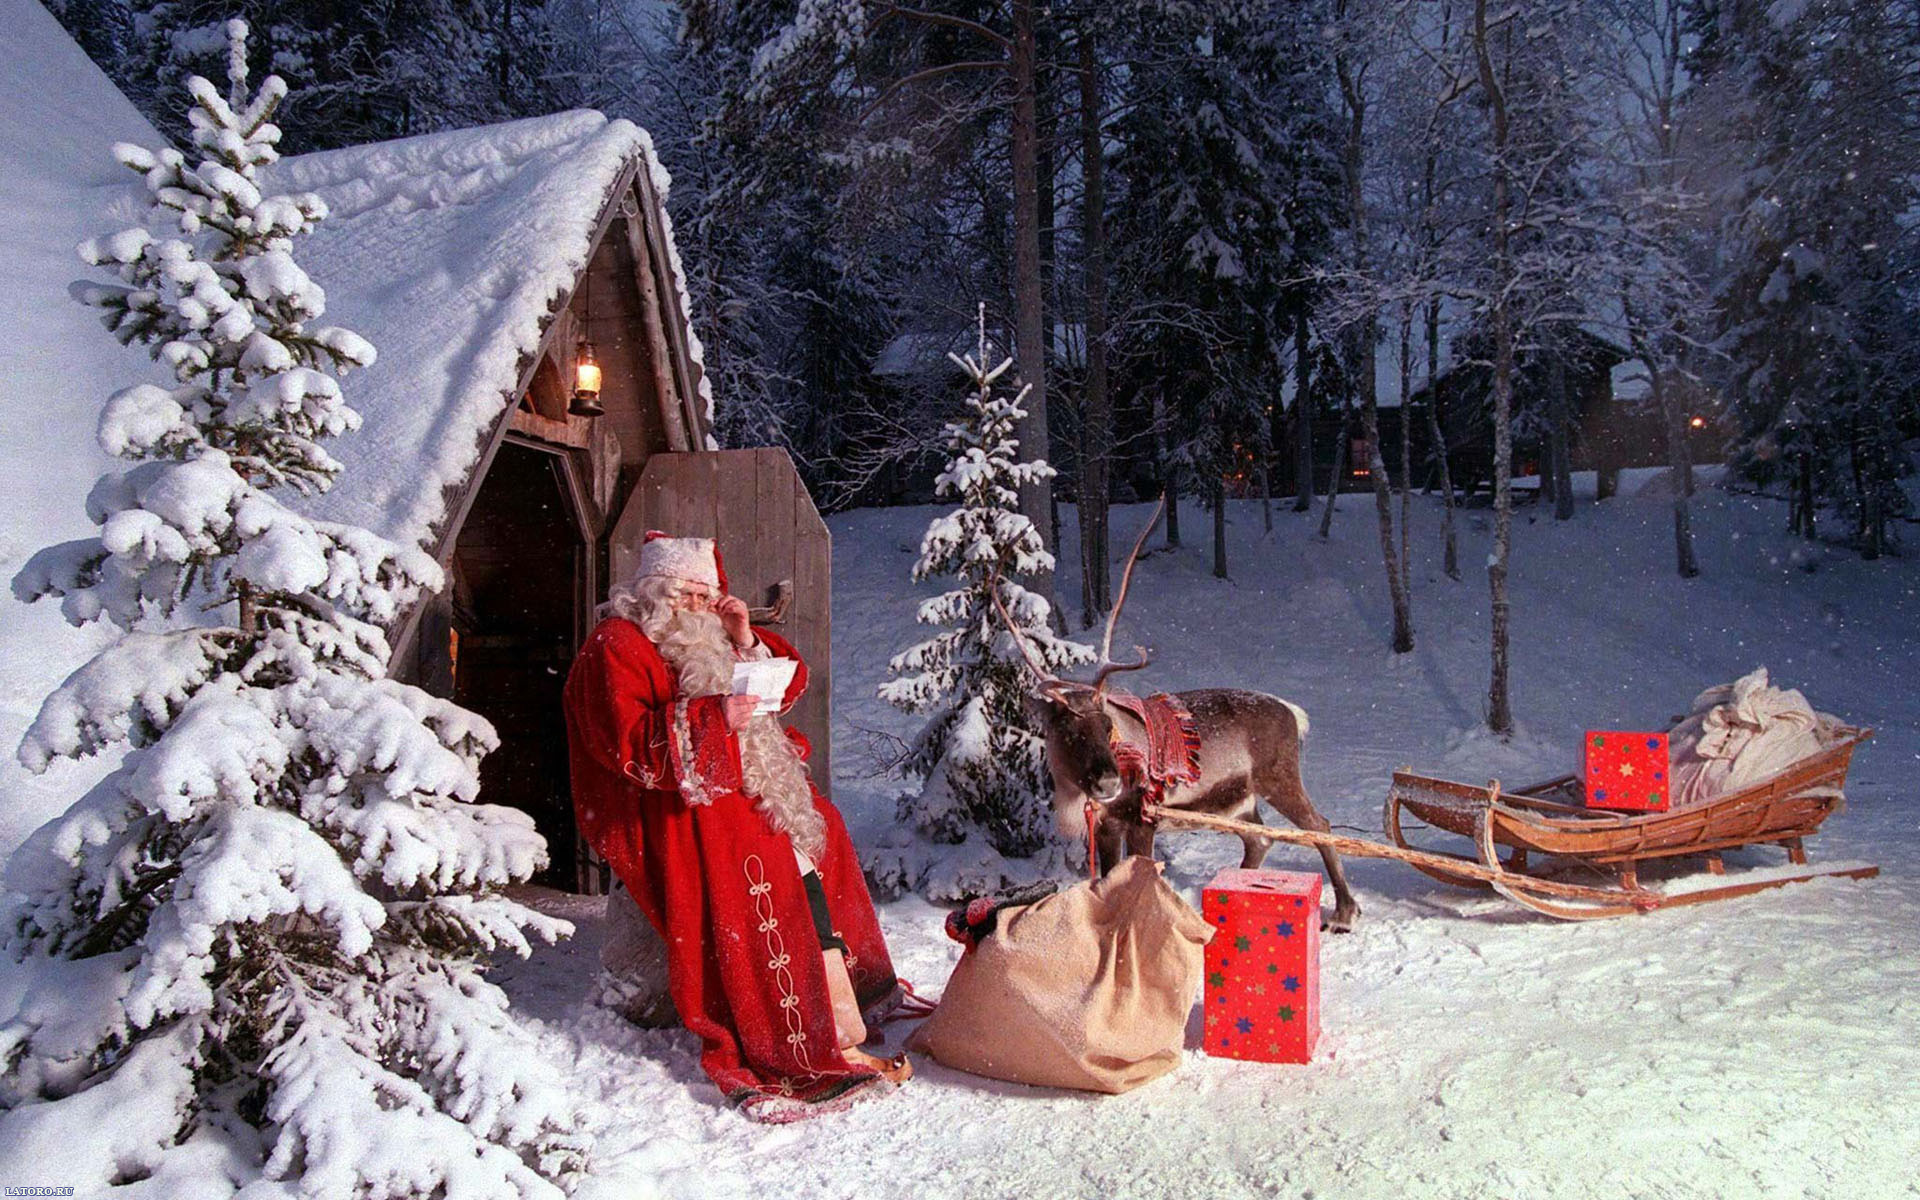 Скачать картинку Санта Клаус (Santa Claus), Праздники, Новый Год (New Year), Рождество (Christmas Xmas), Люди в телефон бесплатно.